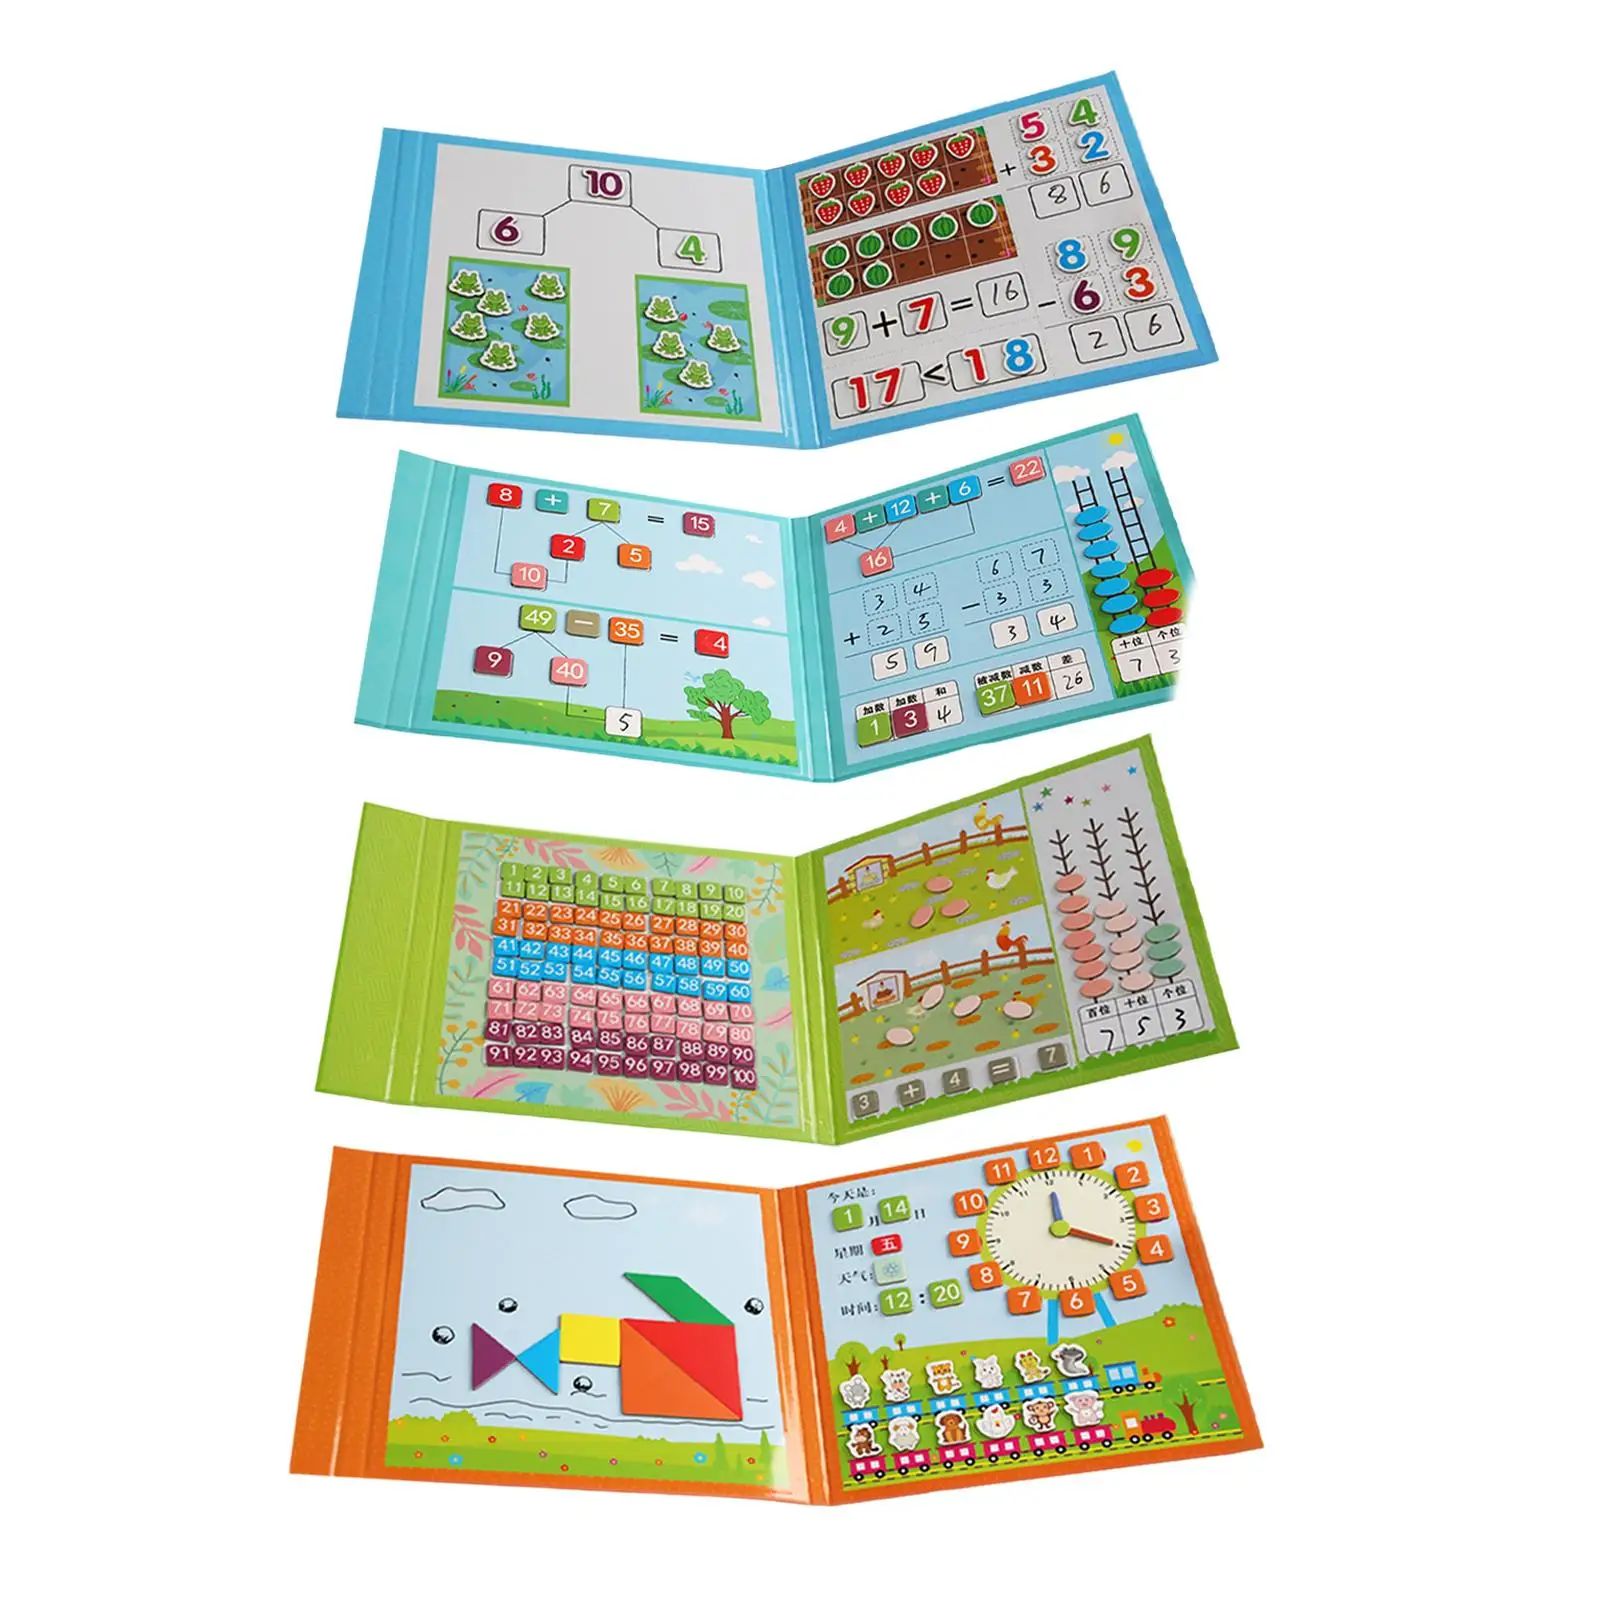 

Математические игрушки Монтессори, цветная математическая сортировочная счетная игрушка, обучающий материал для раннего развития для дома, для детей, мальчиков, малышей